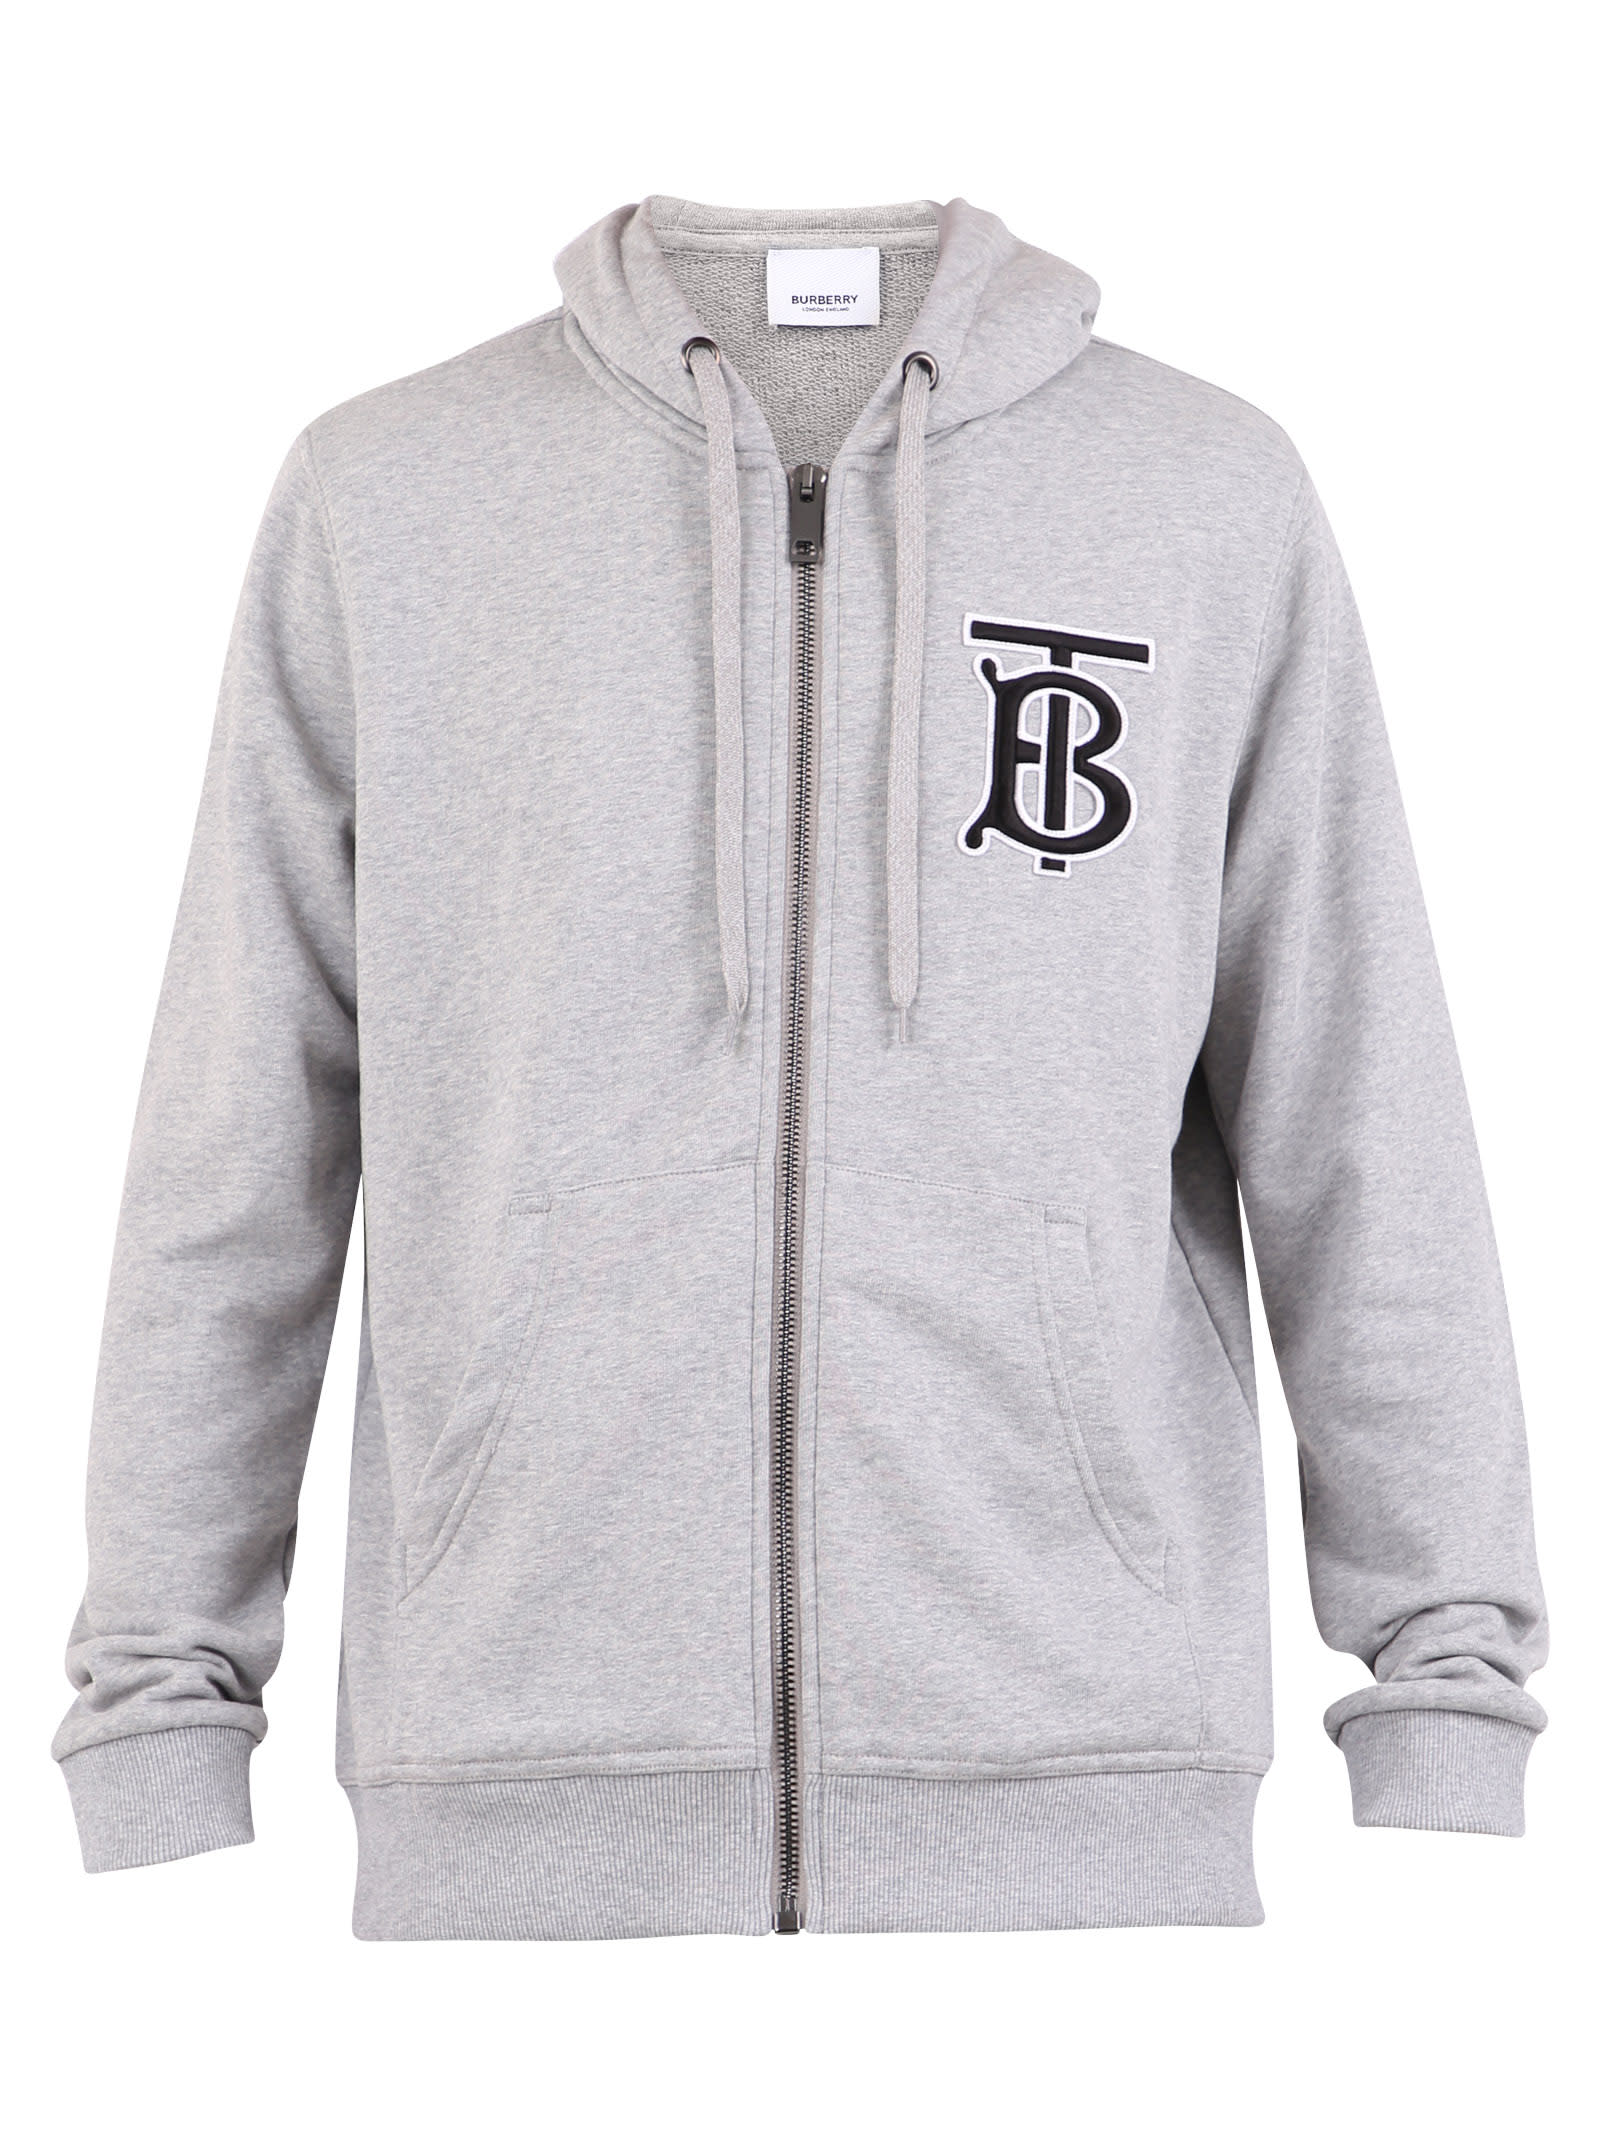 burberry grey hoodie